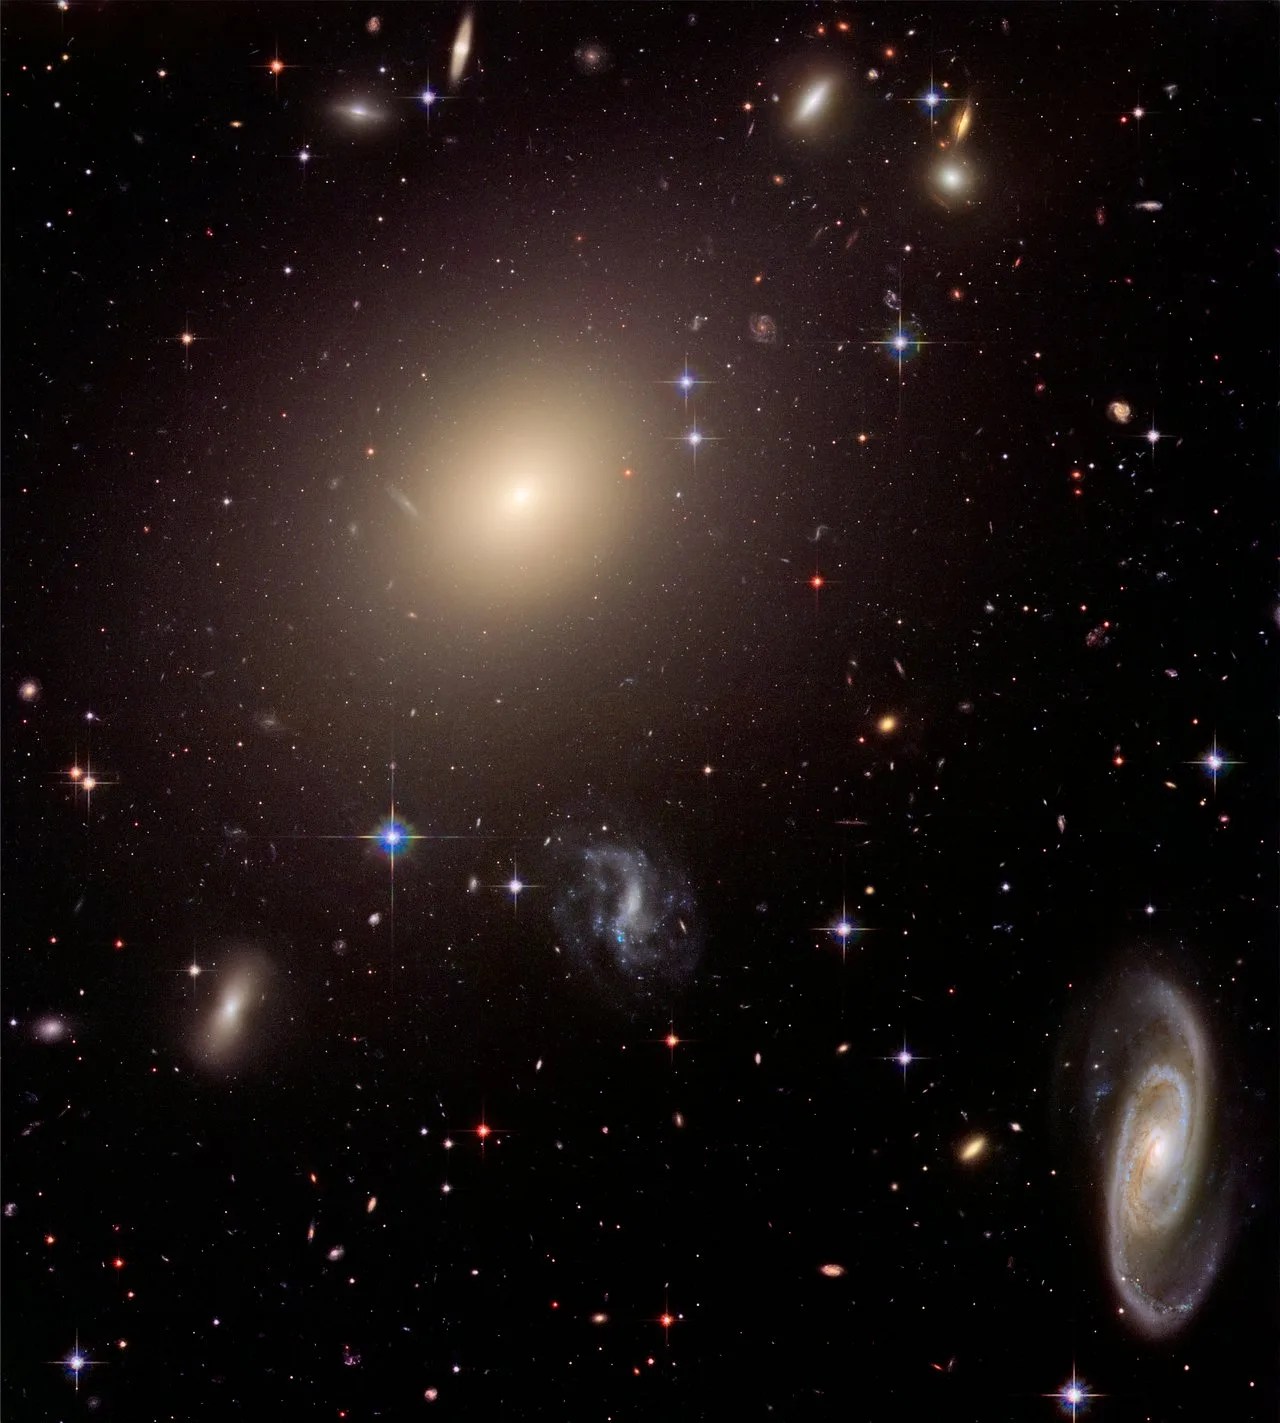 这个区域充满了星系。一个巨大的椭圆星系位于左上象限，就在中心的左边。一个巨大的螺旋星系位于其右侧靠近右角的位置。